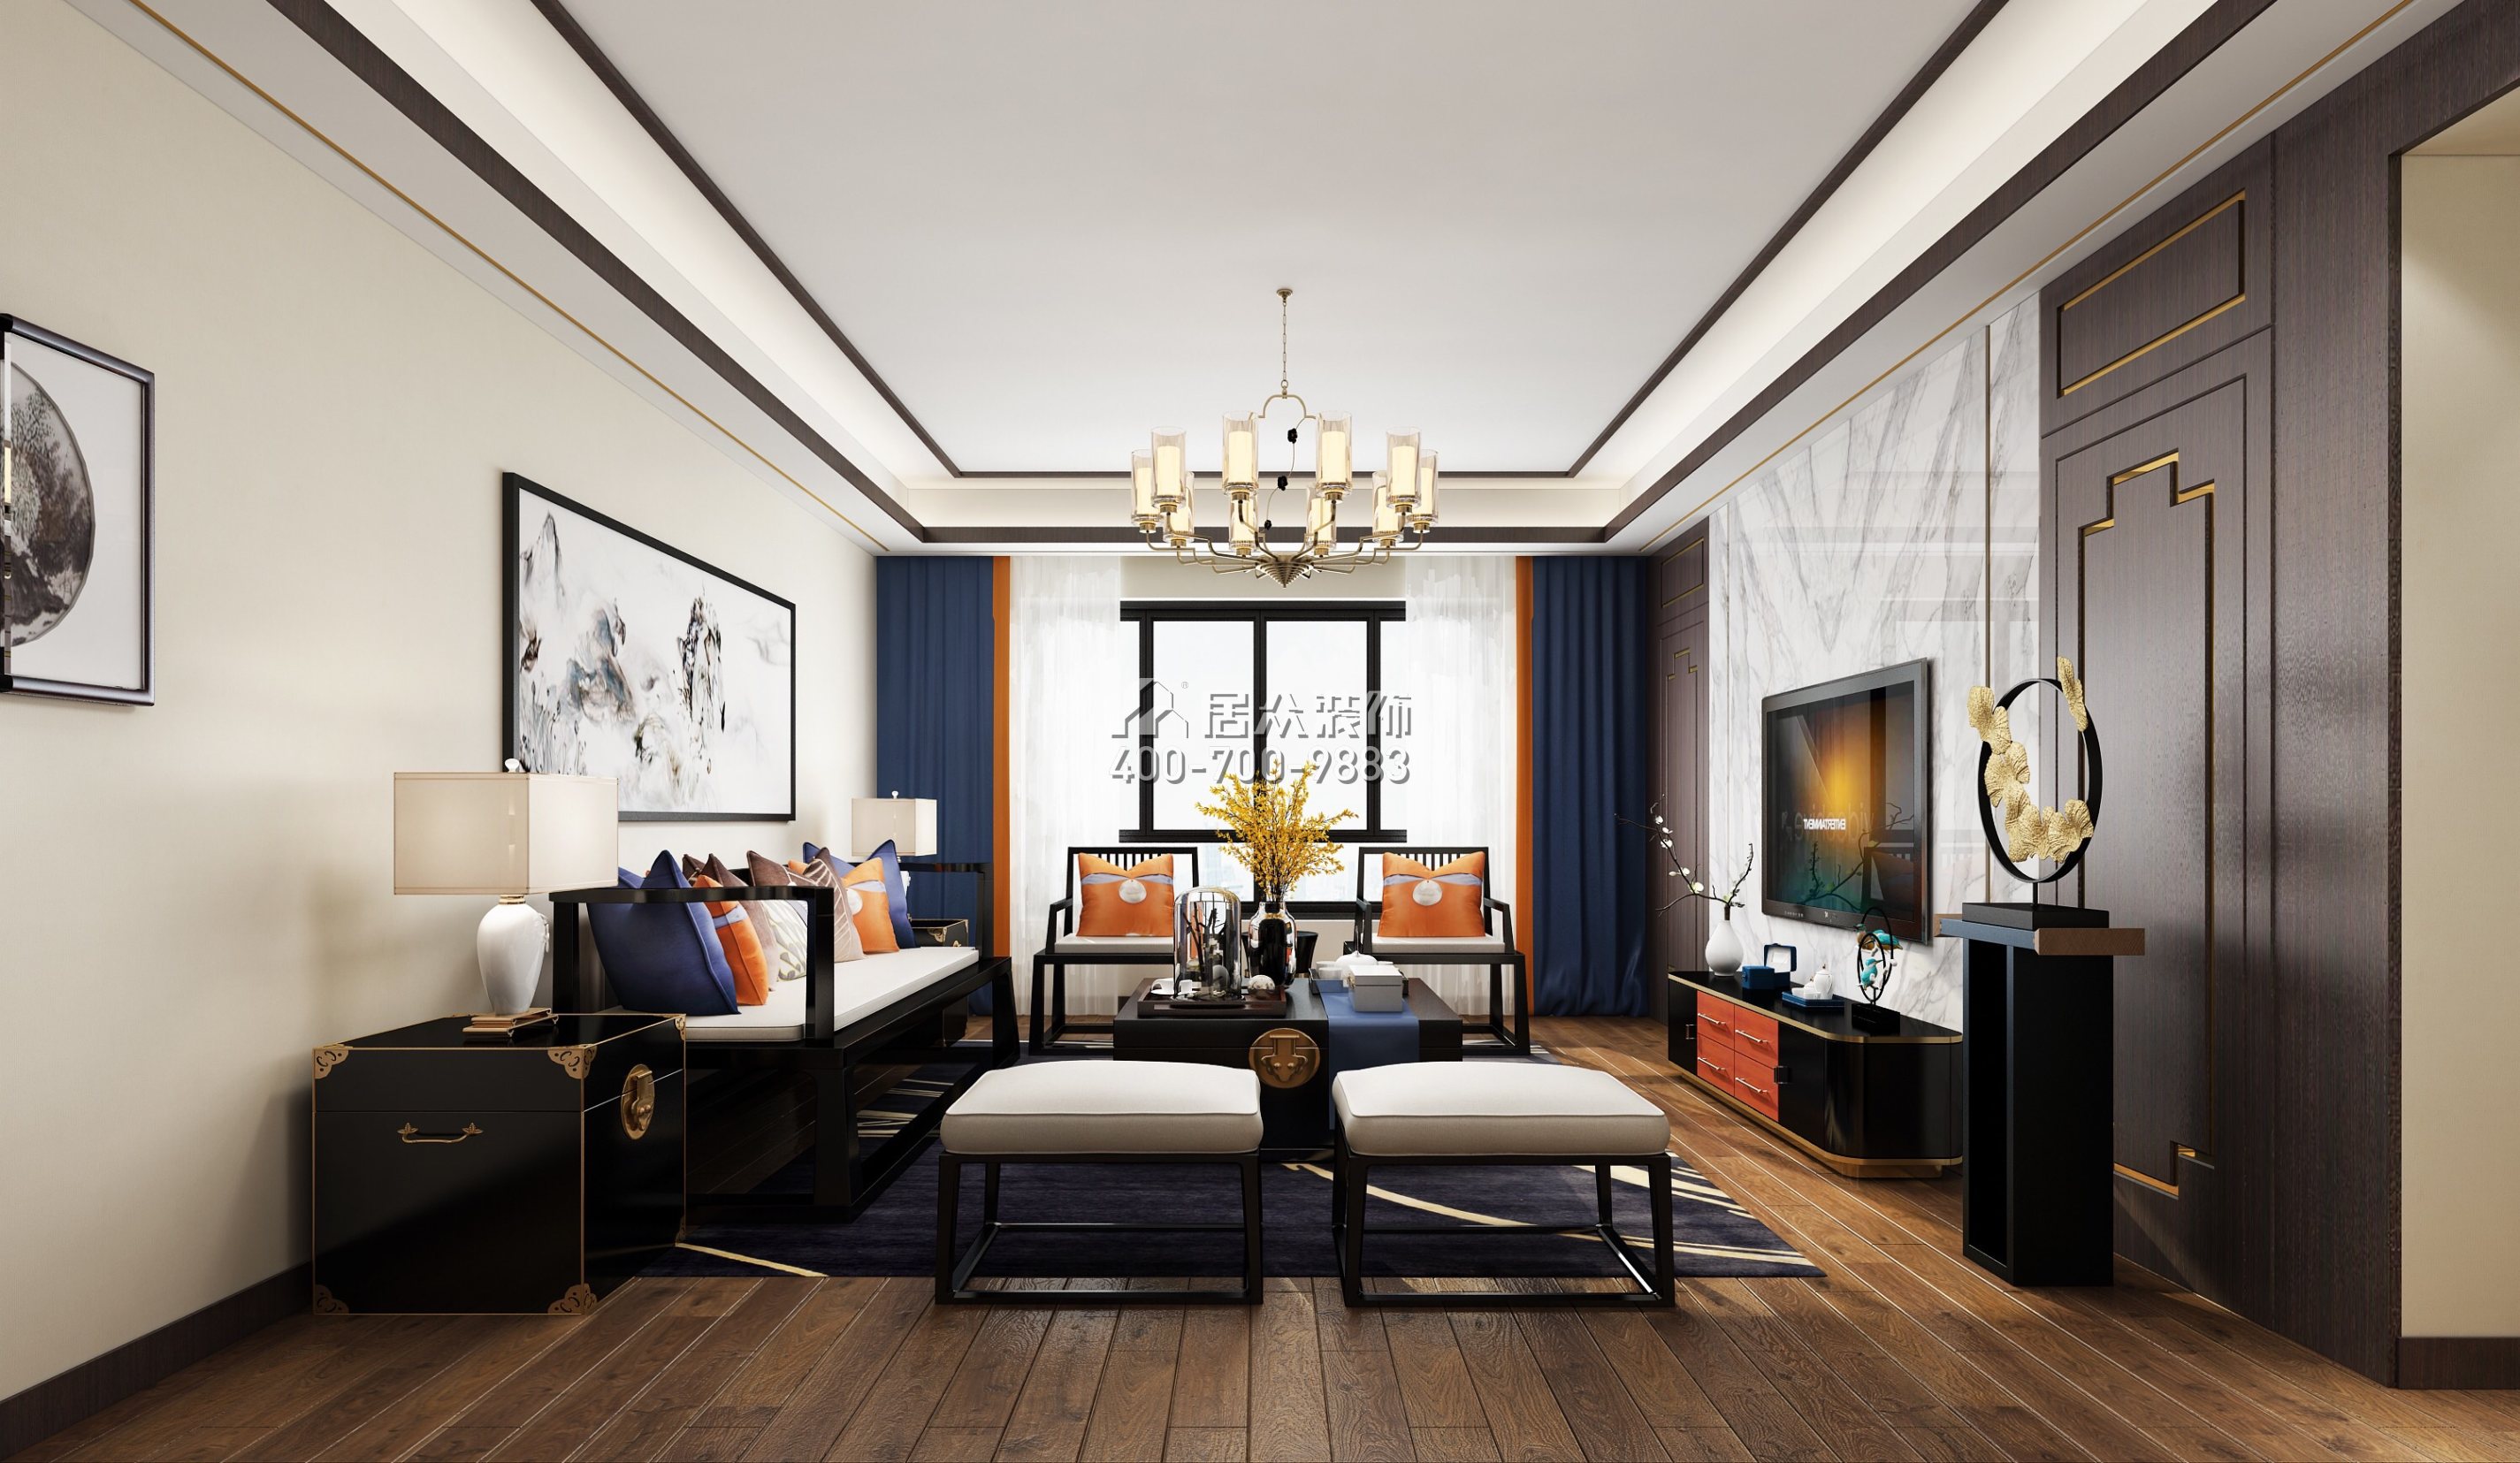 翠沁閣149平方米中式風格平層戶型客廳裝修效果圖